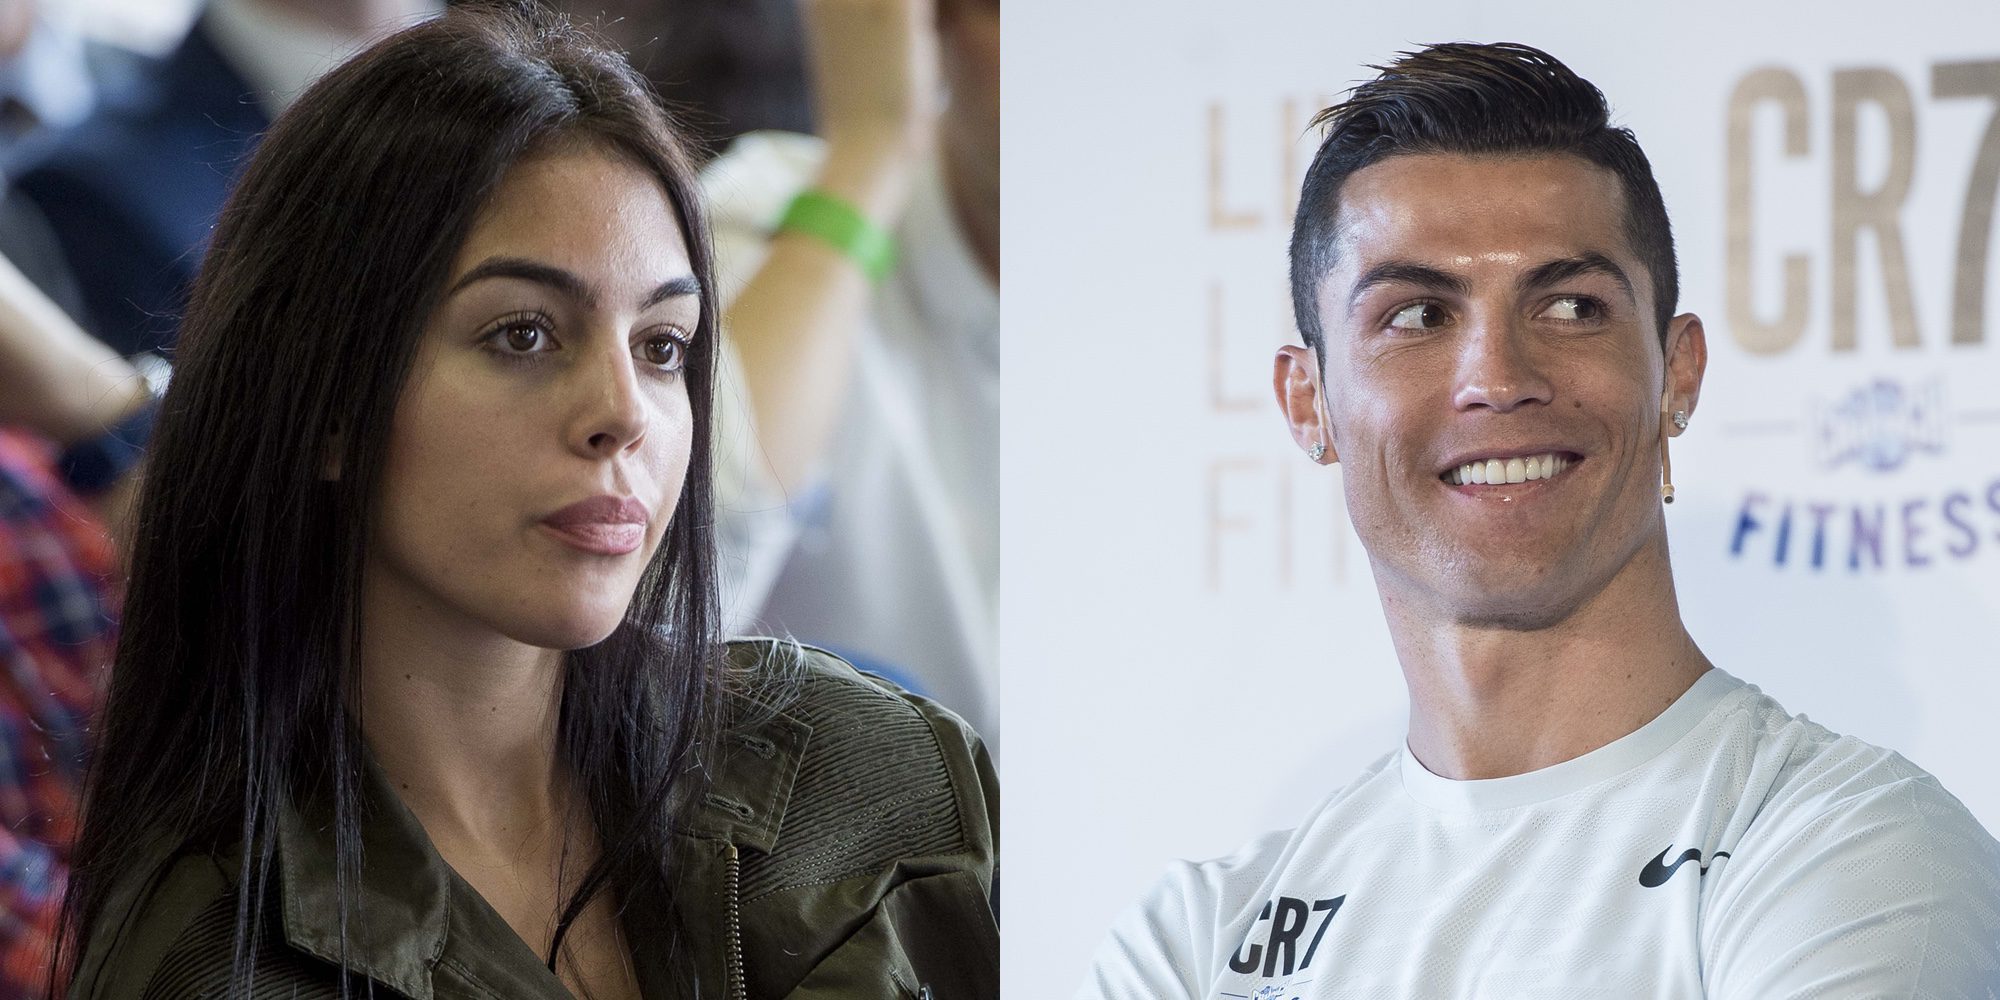 Cristiano Ronaldo reaparece con Georgina Rodríguez tras anunciarse su próxima paternidad